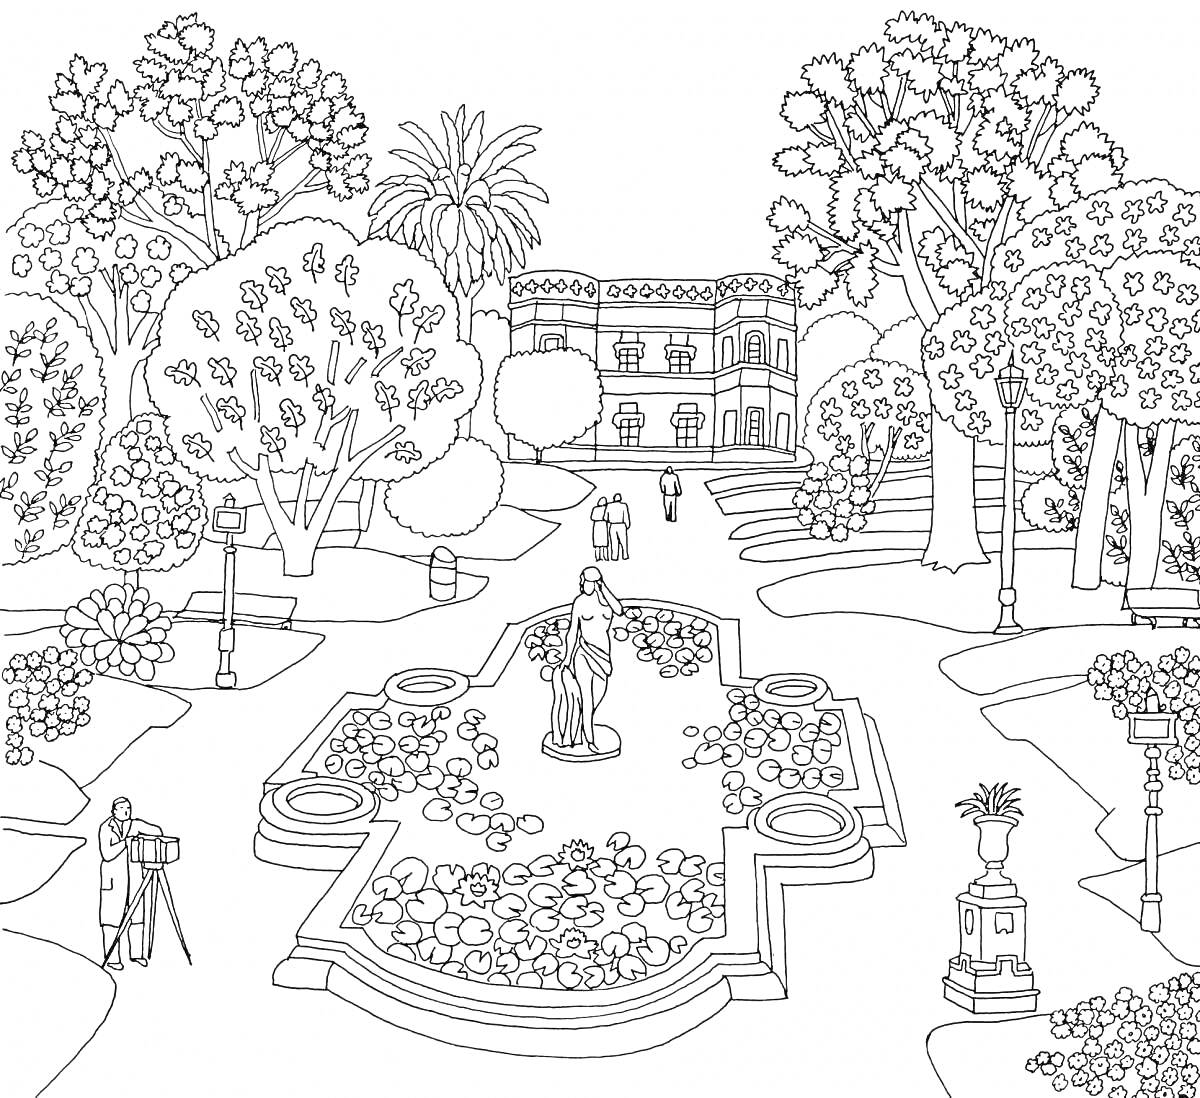 Раскраска Сад с фонтаном, деревьями, цветами и зданием на заднем плане